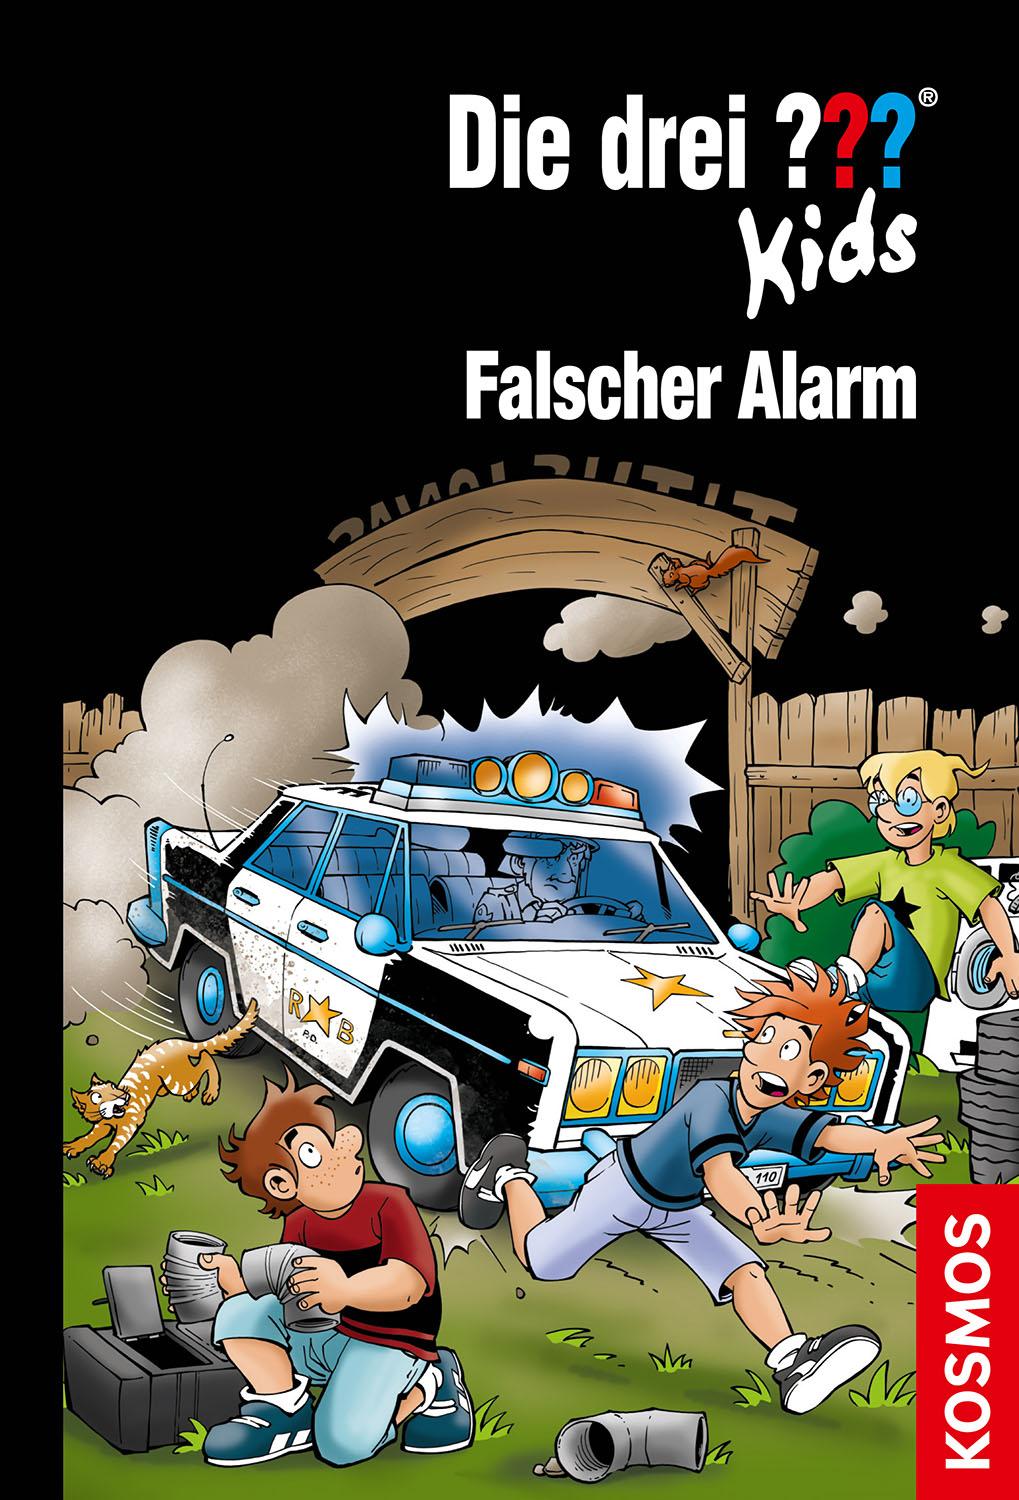 Die drei ''' Kids Buch: Falscher Alarm